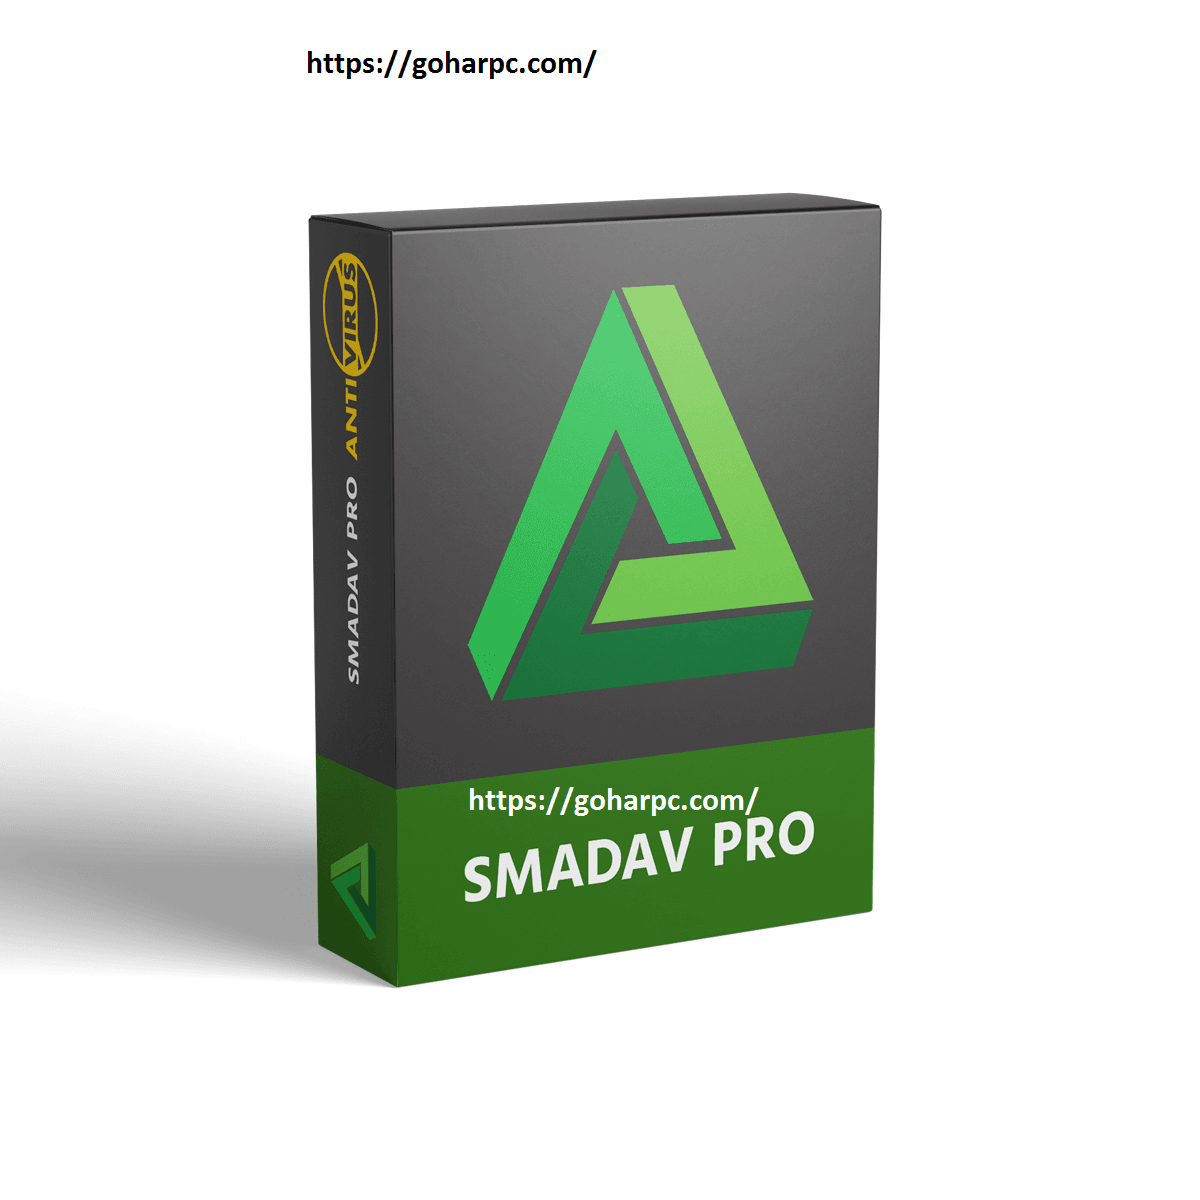 Smadav Pro 2020 Rev. 13.8.0 Crack Full License Key Free Download TorrentSmadav Pro 2020 Rev. 13.8.0 Crack Full License Key Free Download Torrent